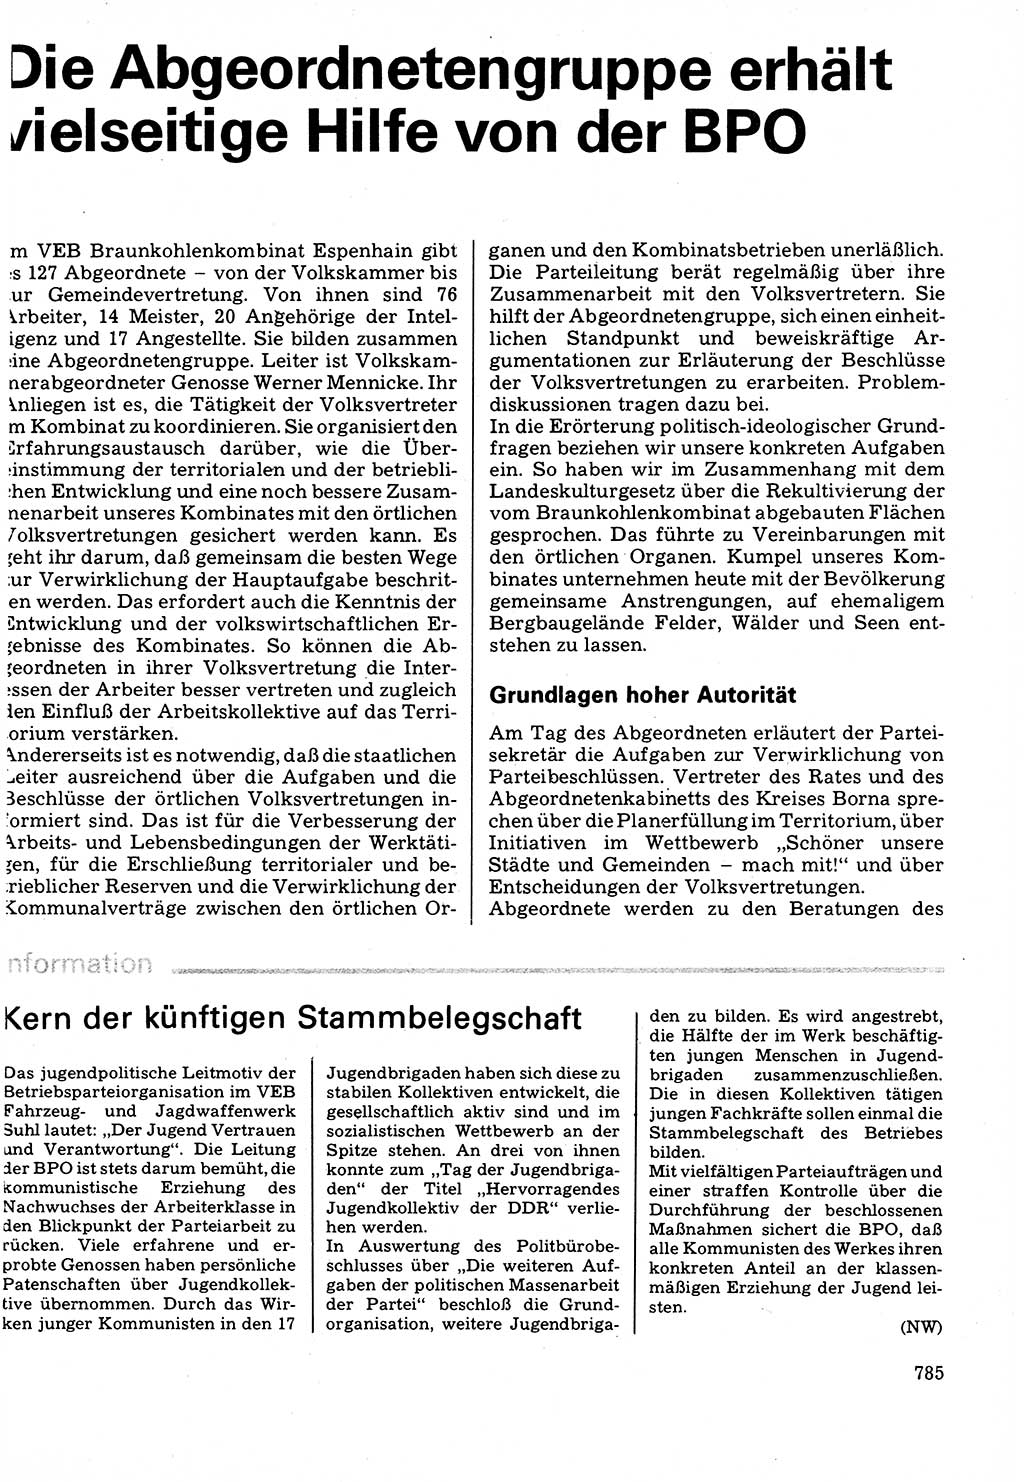 Neuer Weg (NW), Organ des Zentralkomitees (ZK) der SED (Sozialistische Einheitspartei Deutschlands) fÃ¼r Fragen des Parteilebens, 32. Jahrgang [Deutsche Demokratische Republik (DDR)] 1977, Seite 785 (NW ZK SED DDR 1977, S. 785)